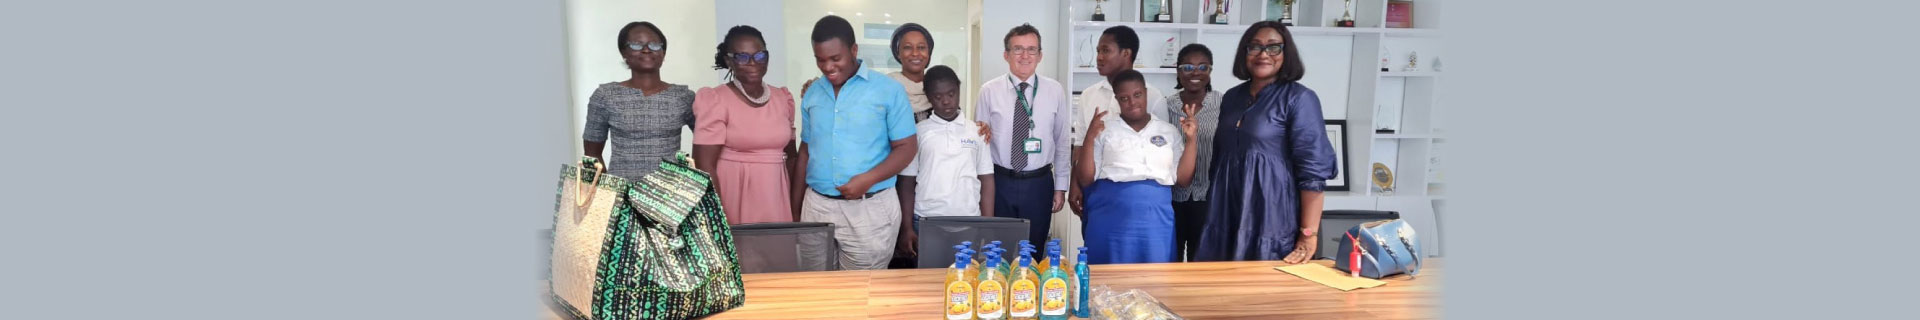 Partenariat avec une école internationale au Ghana